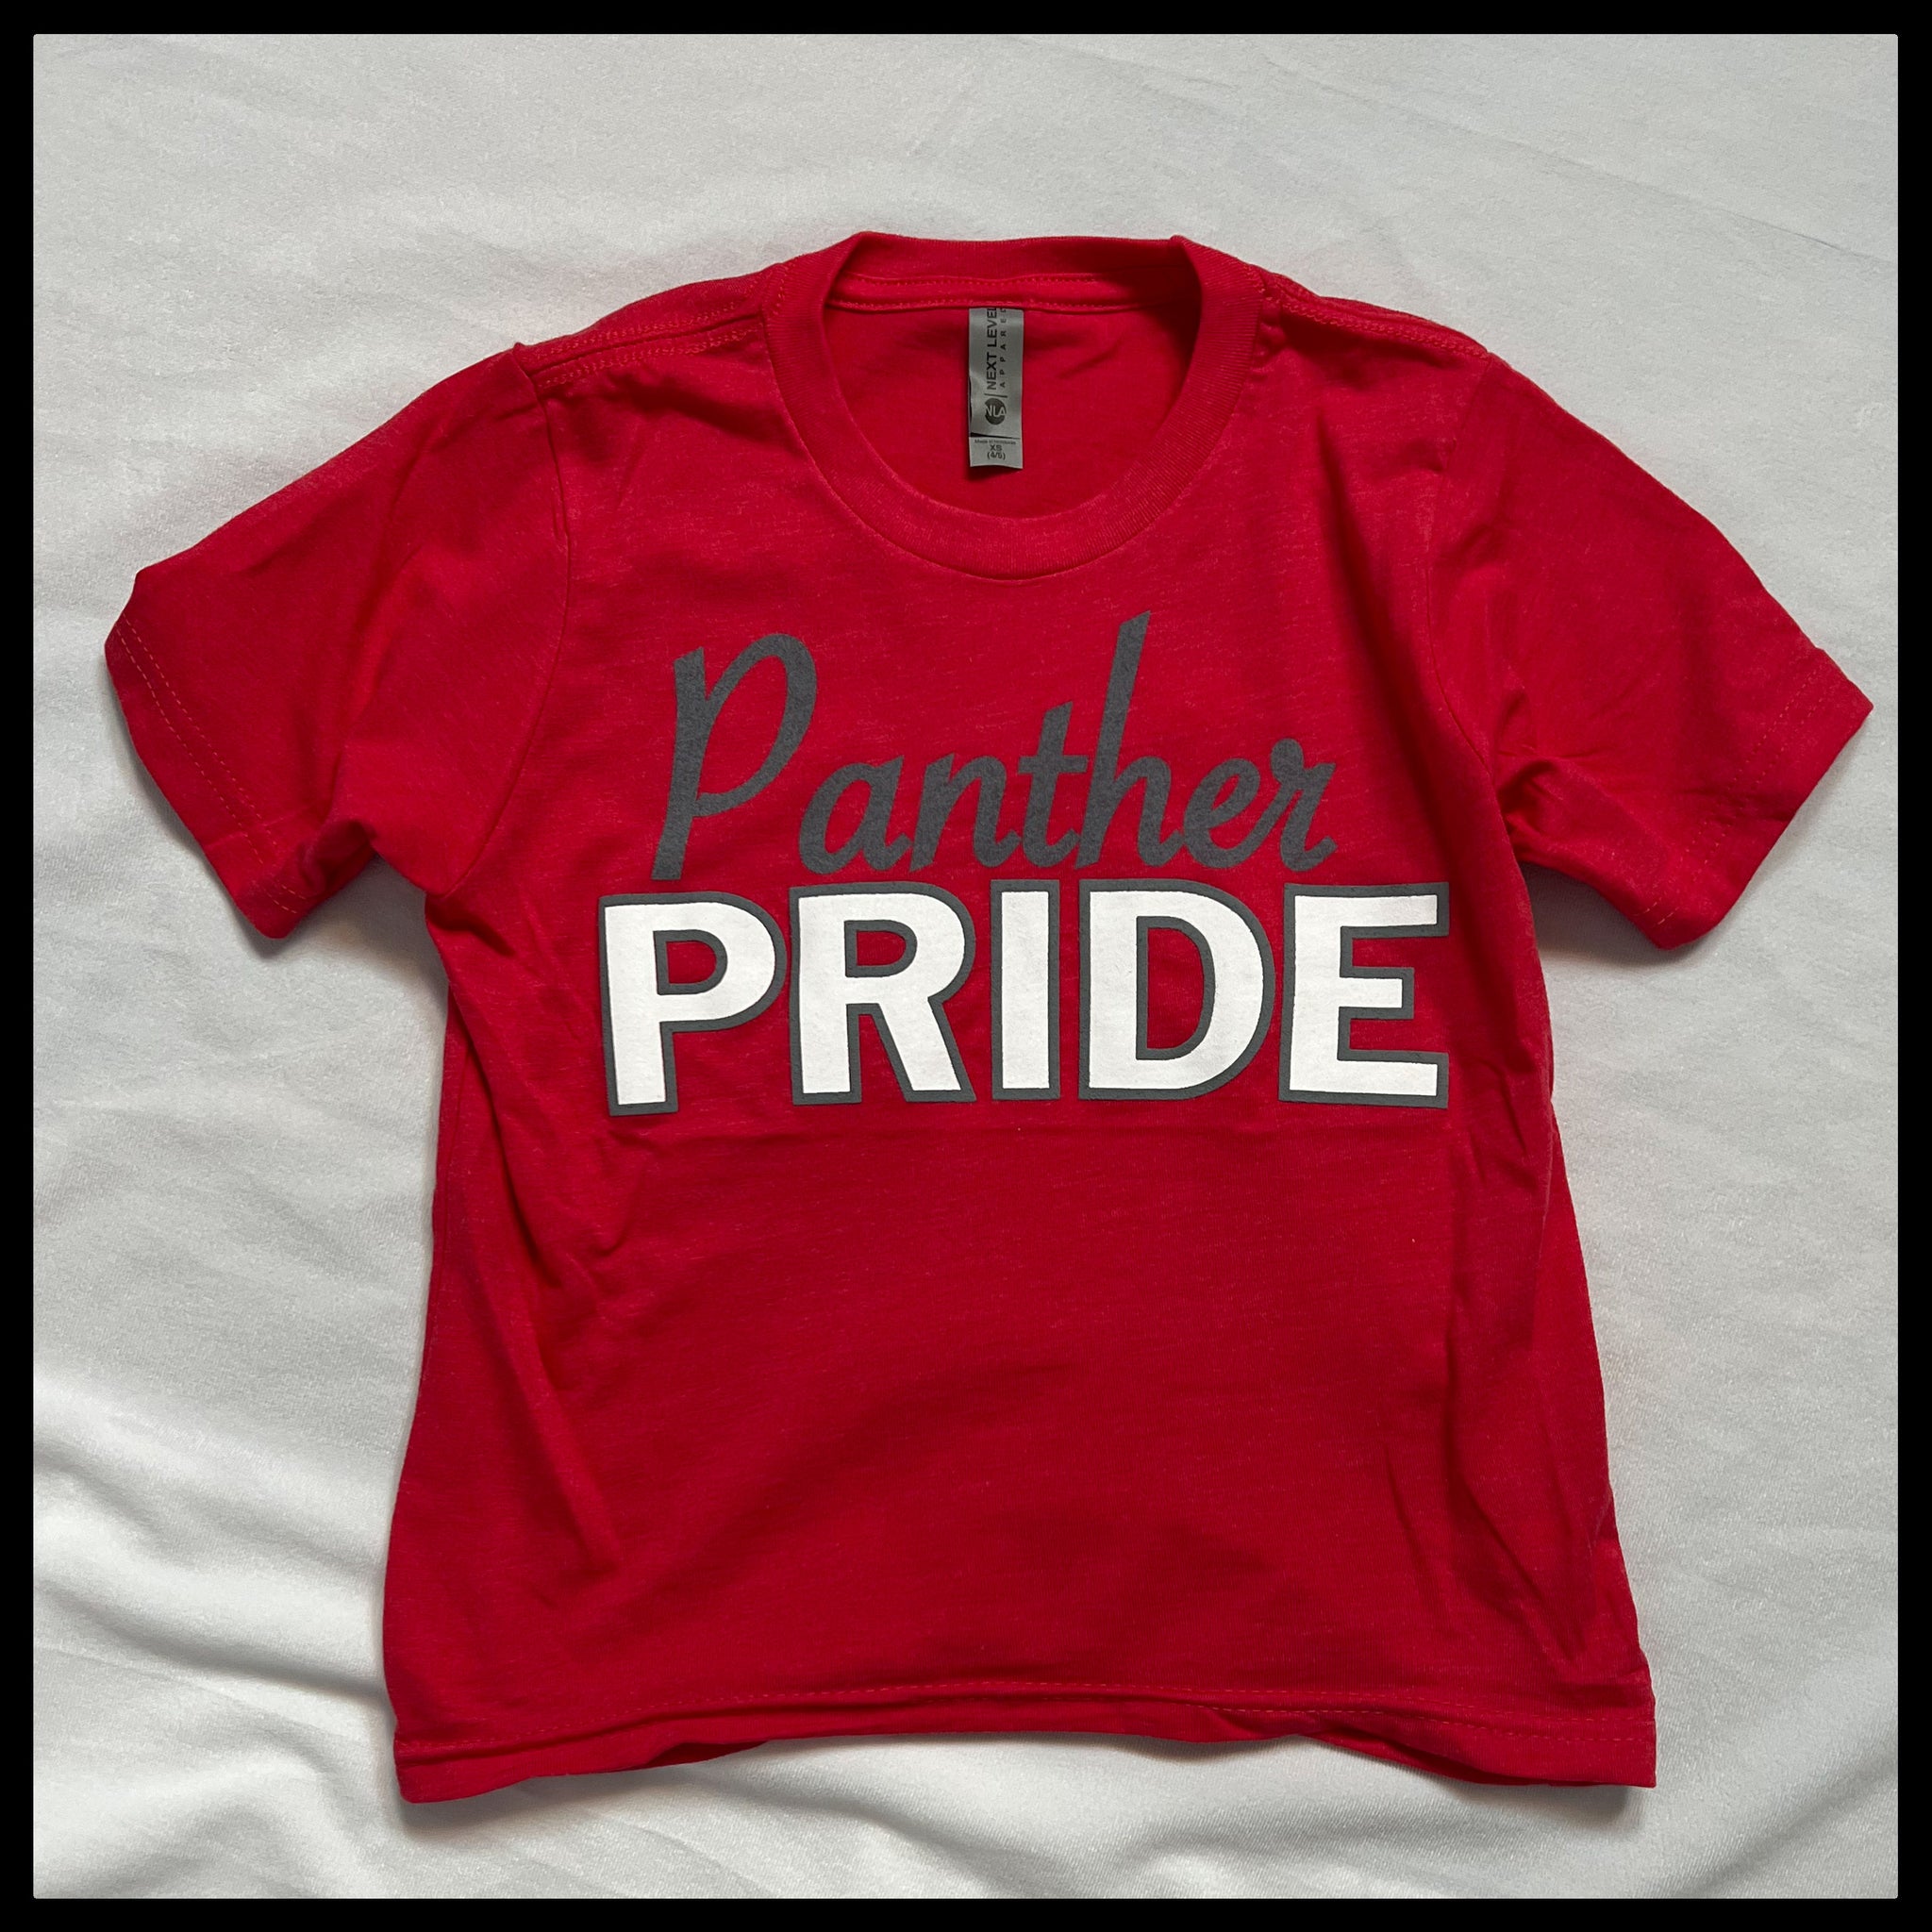 Kid Panther Pride T-shirt 2.0